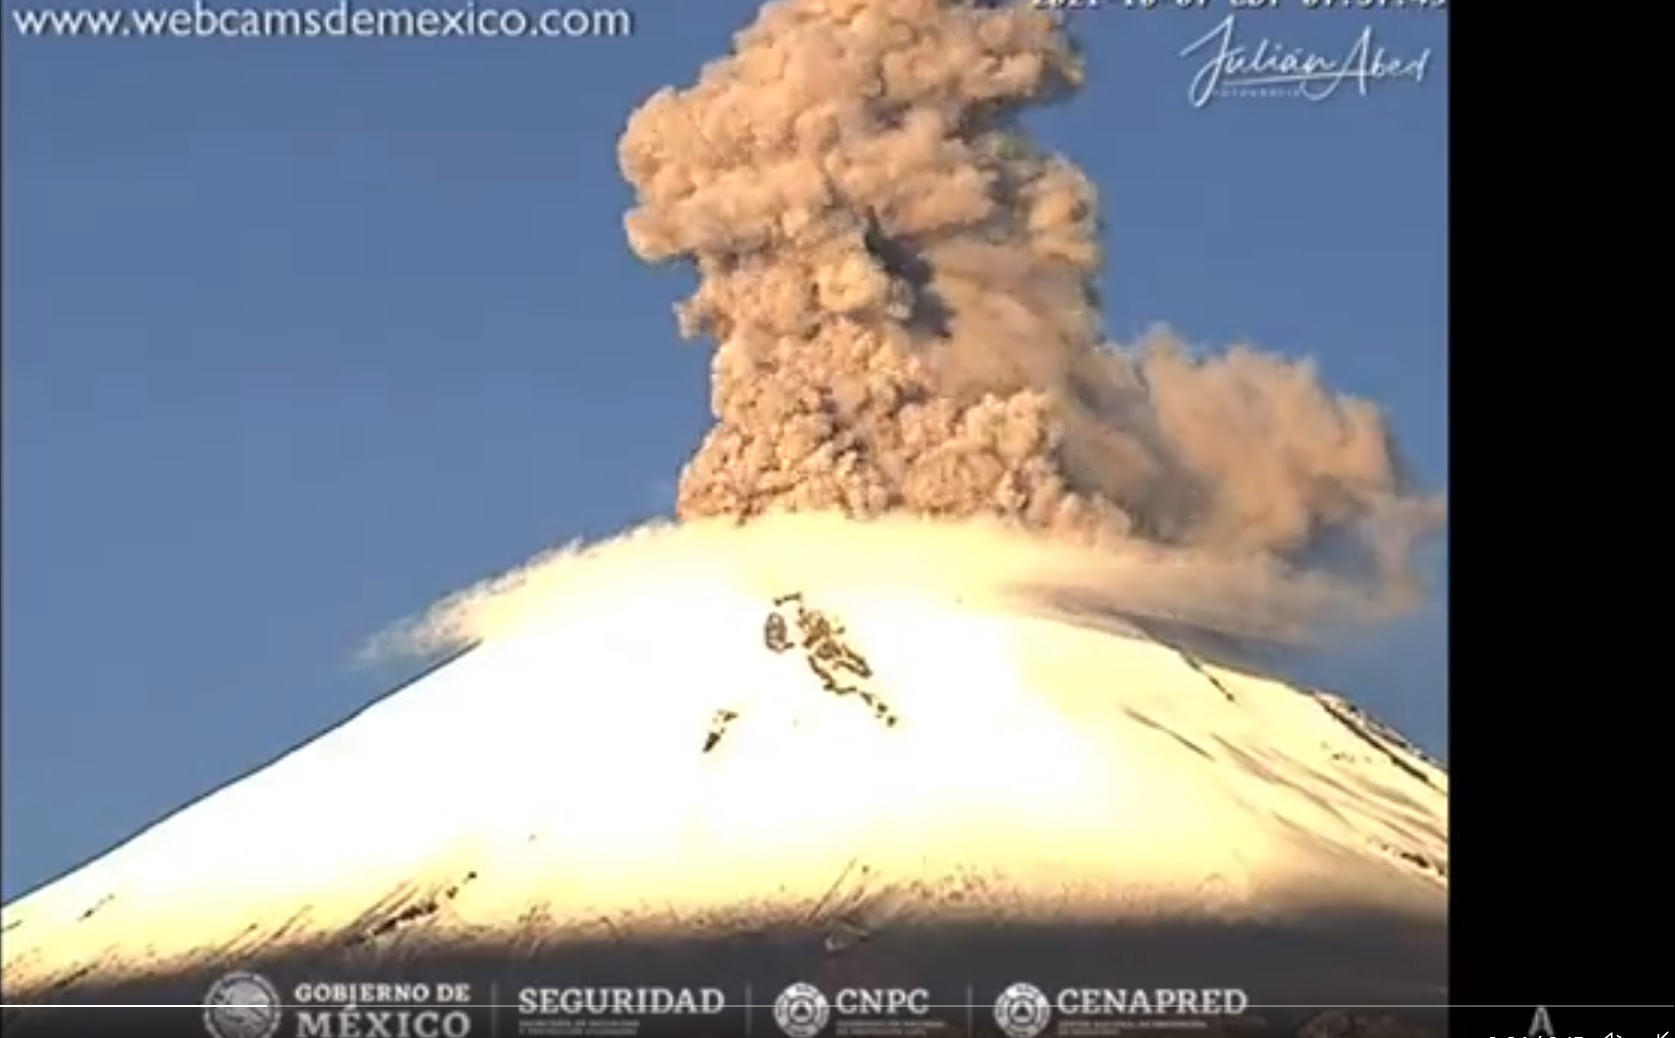 Webcam screenshot from today's explosion at Popocatépetl volcano (image: @chematierra/twitter)